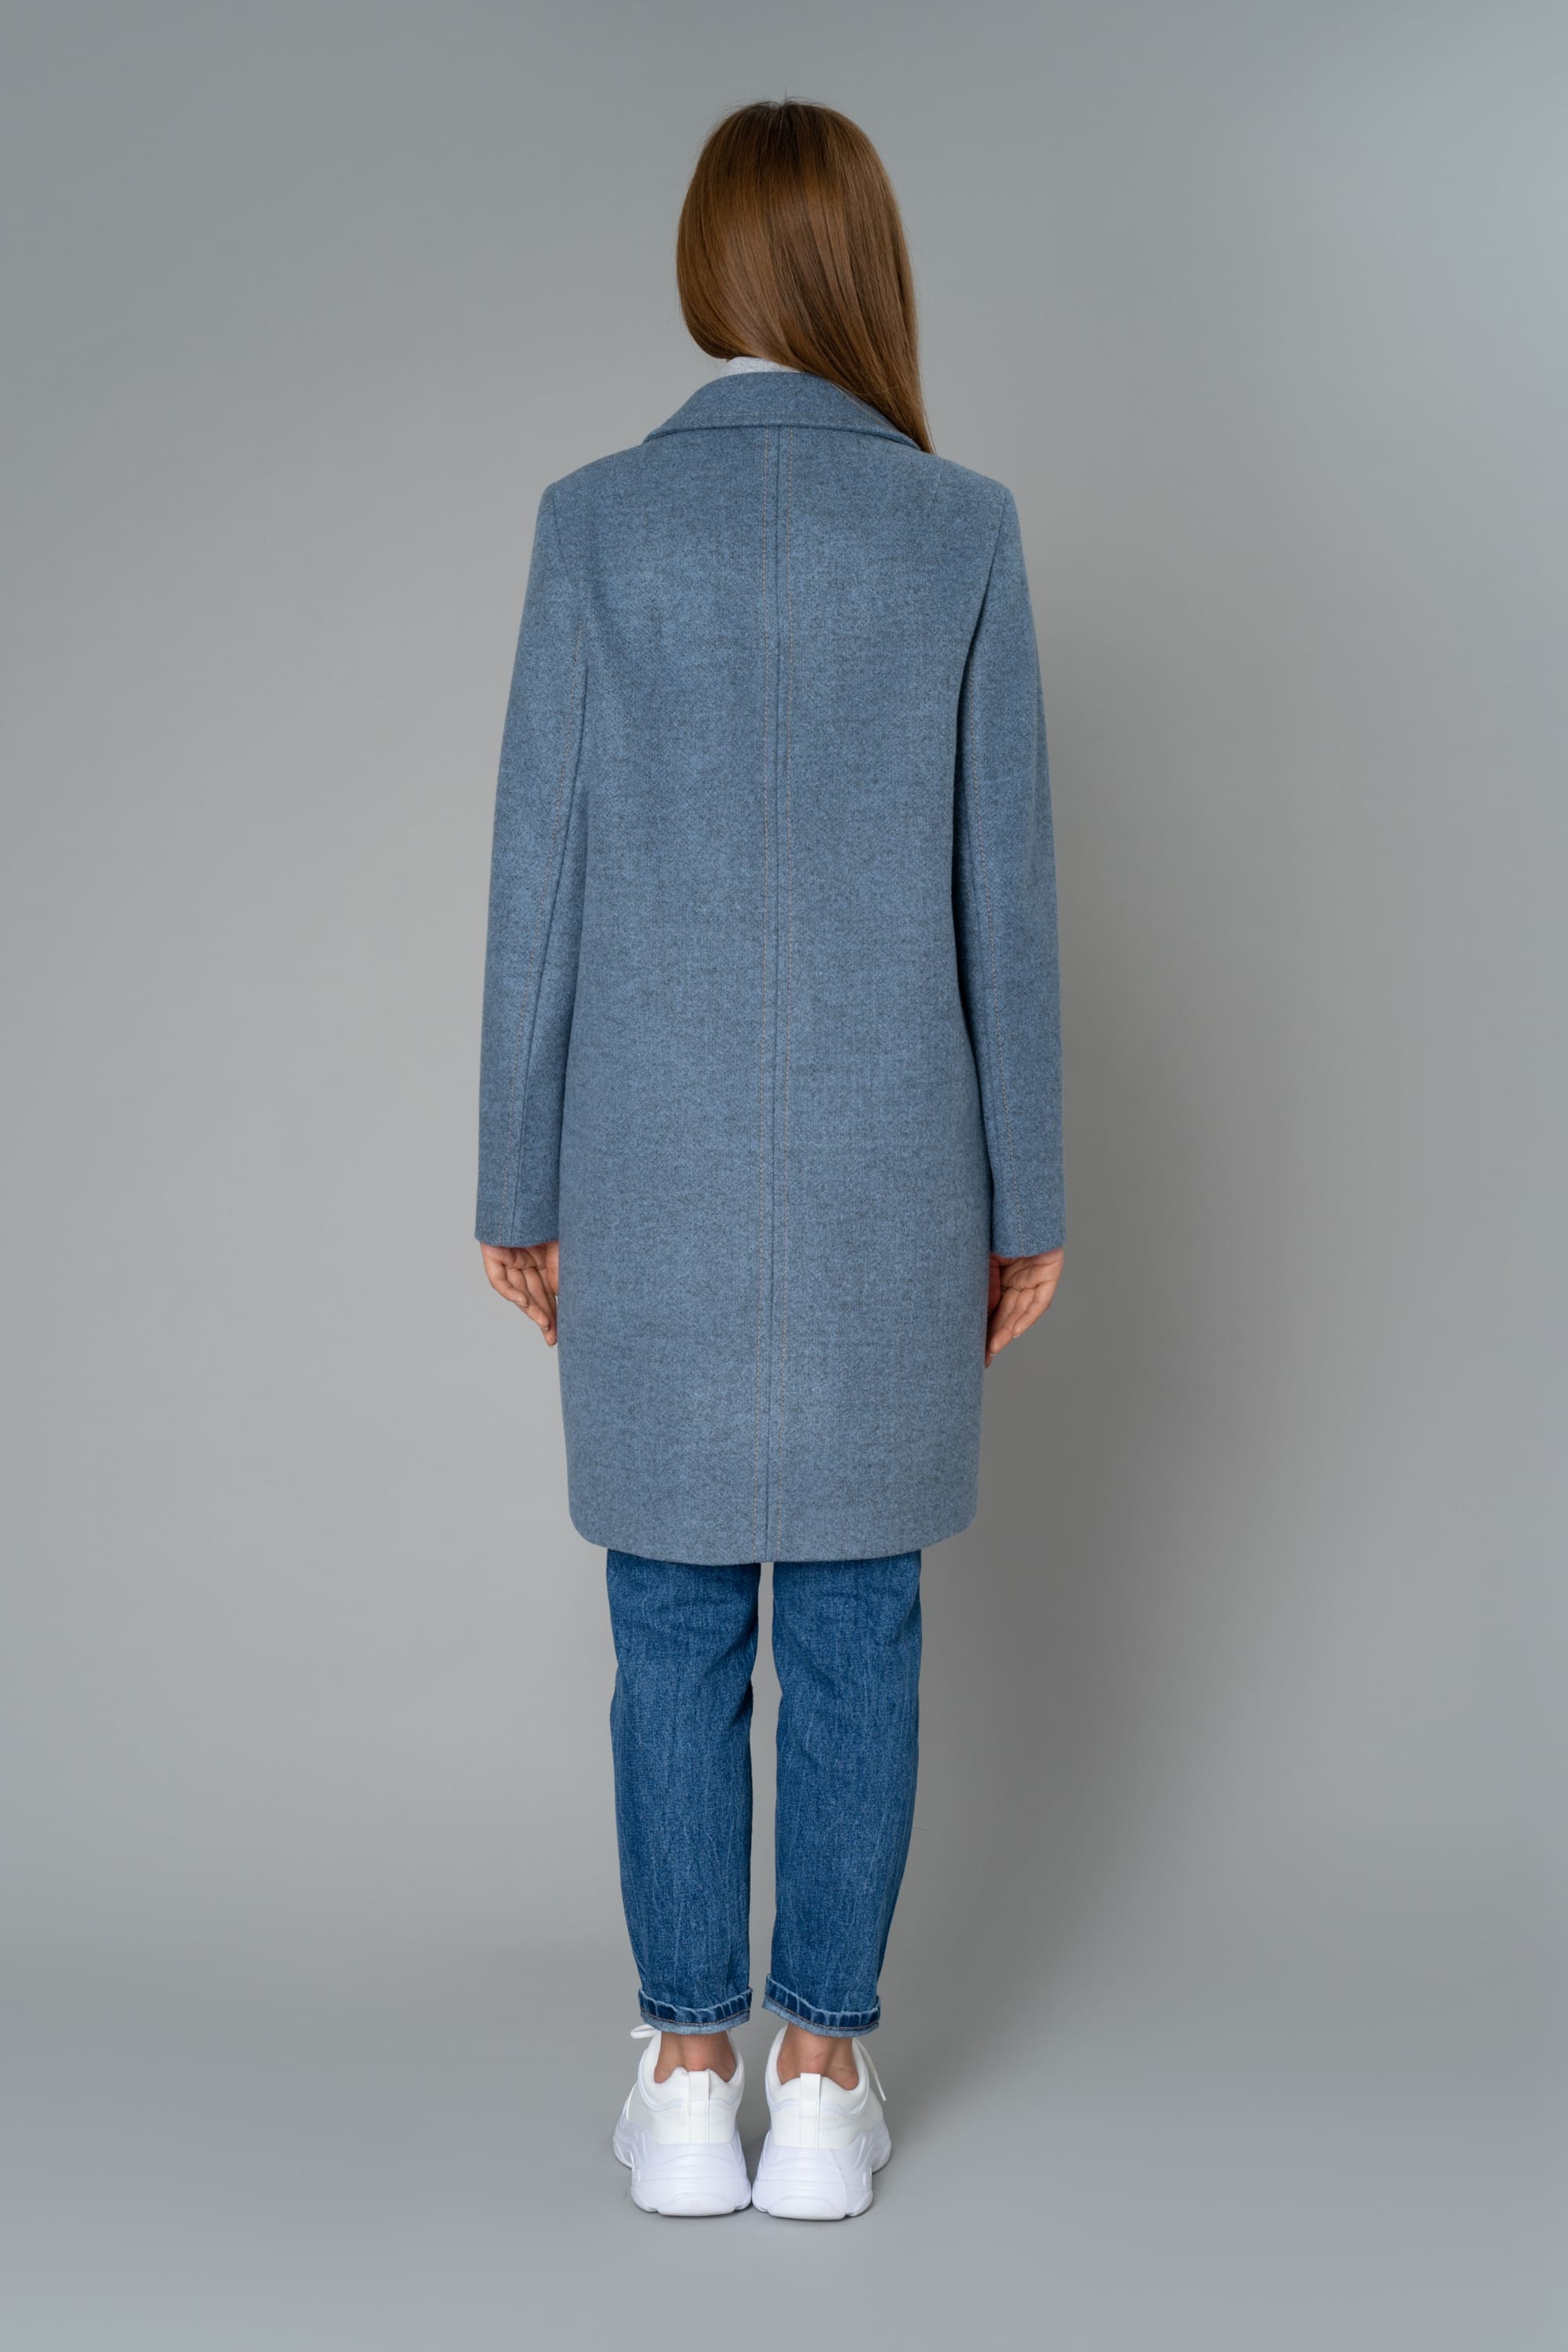 Пальто женское демисезонное 1-8395-1. Фото 2.